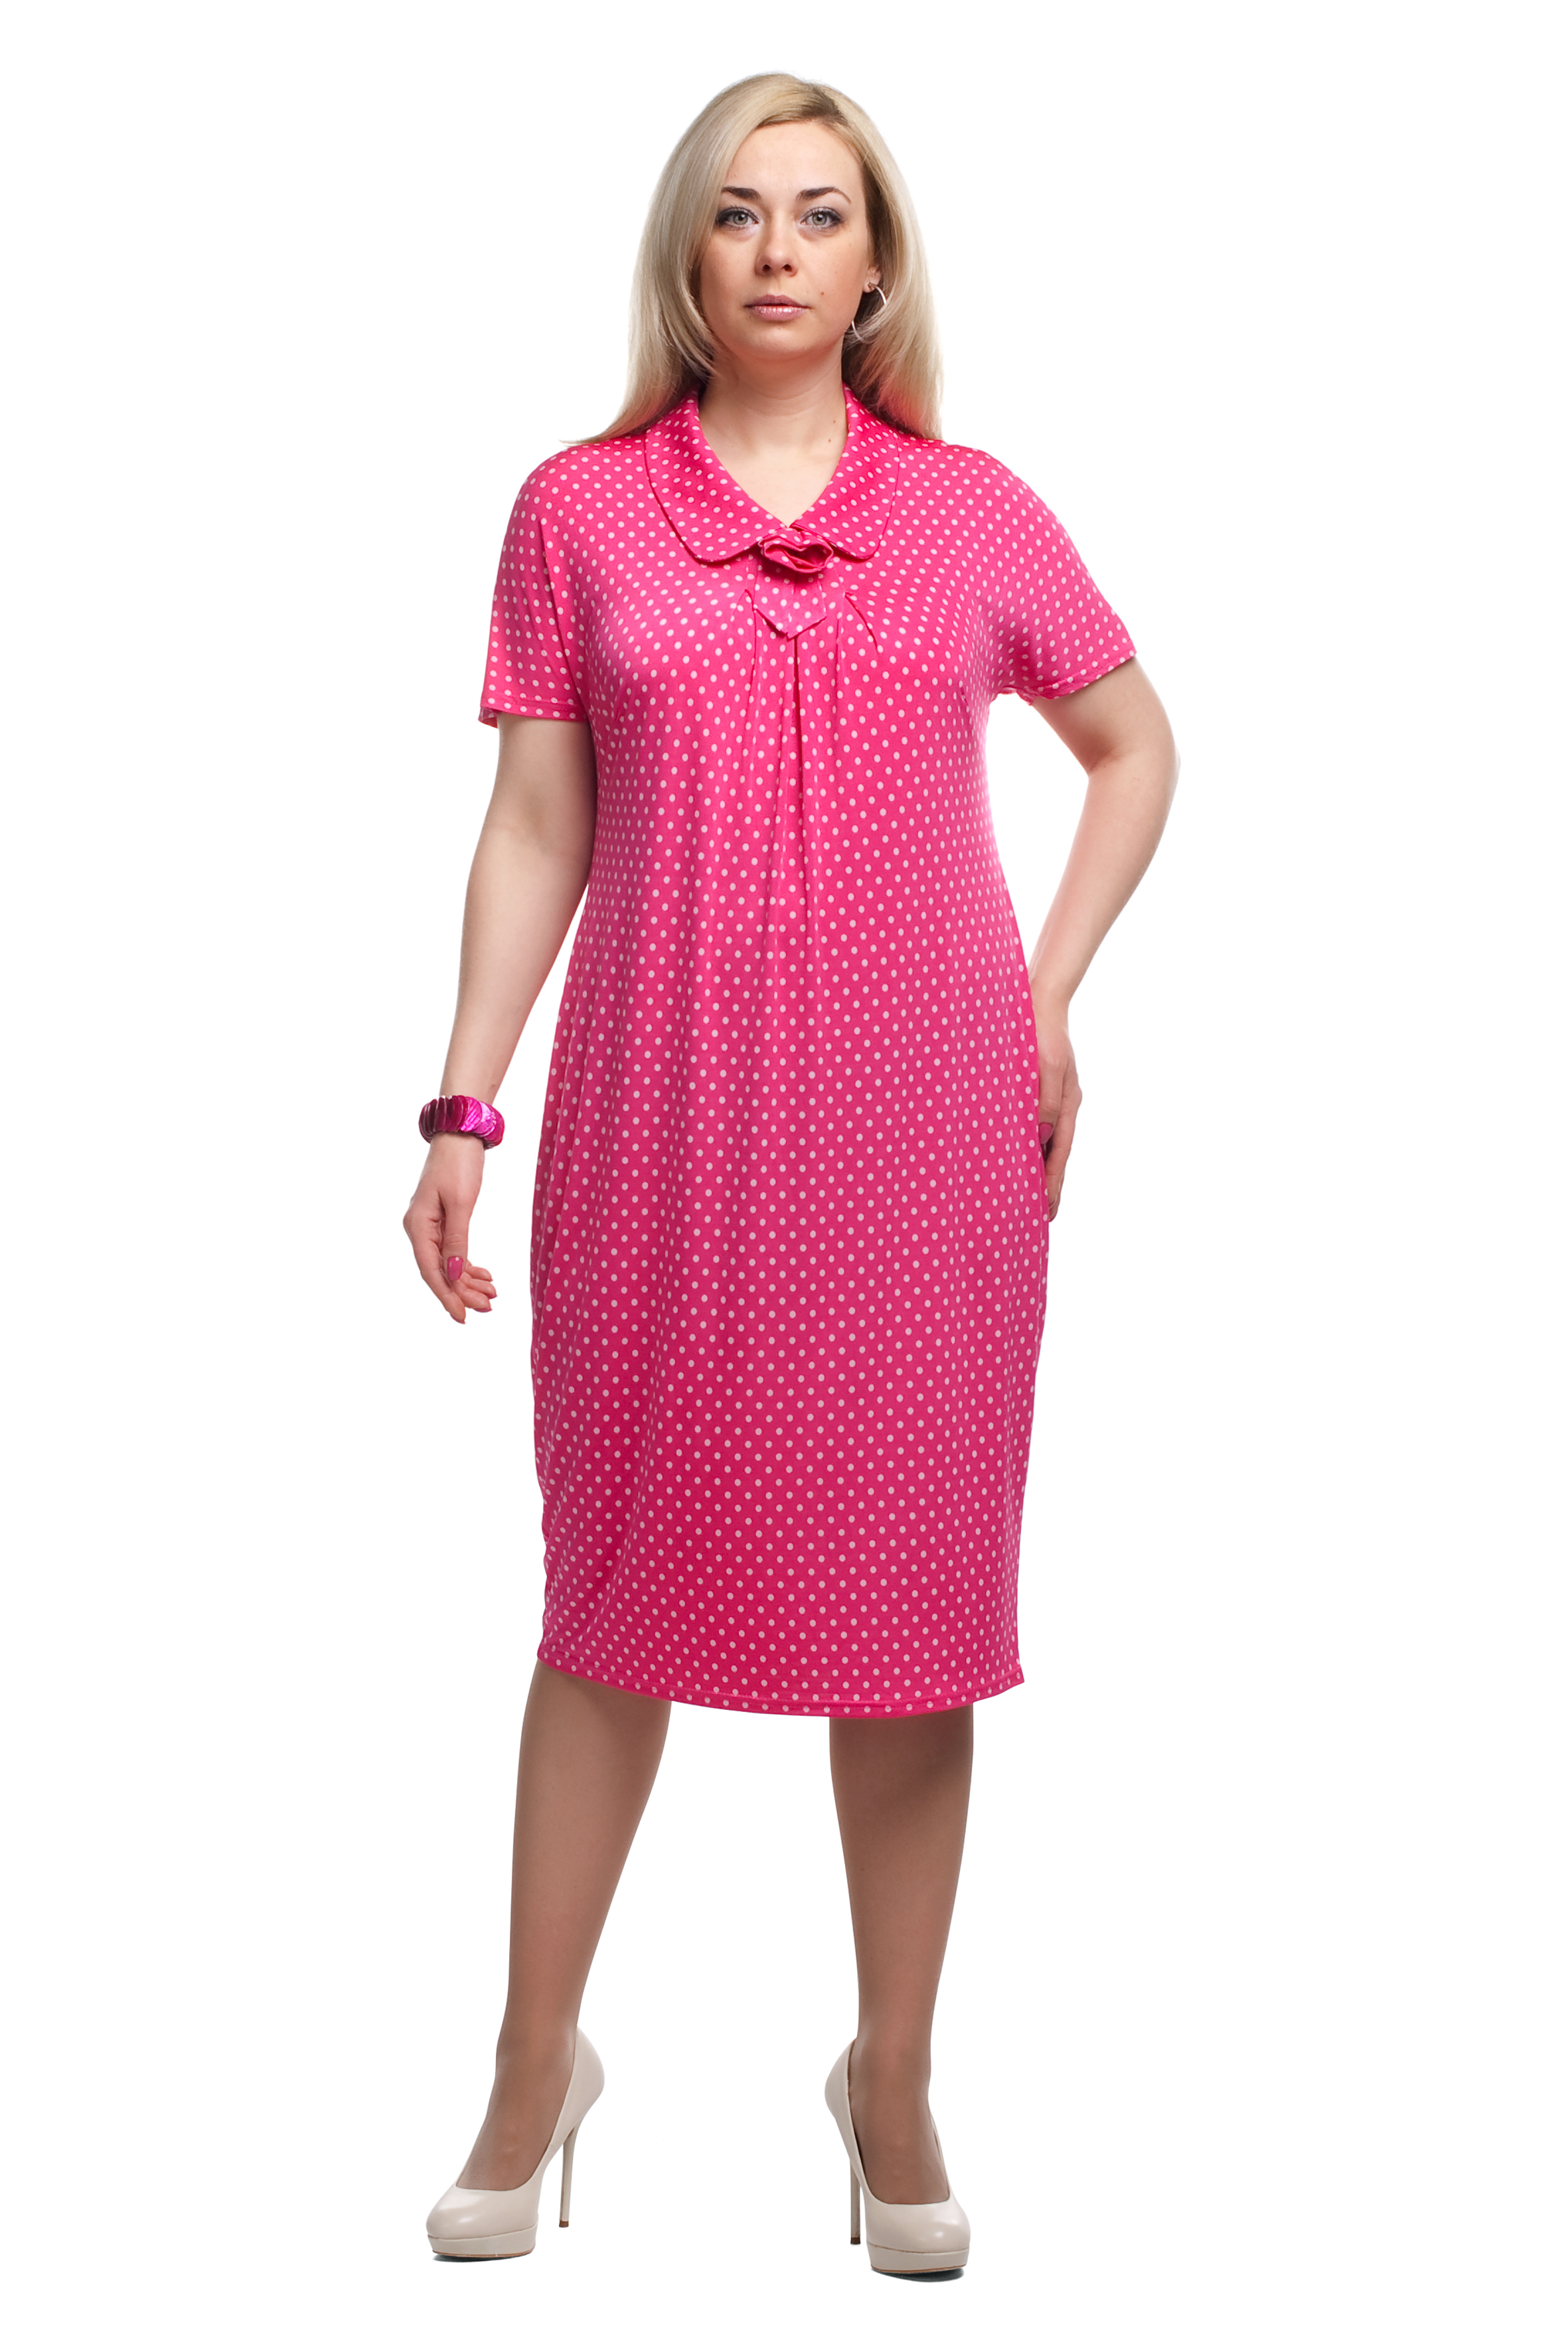 Валберис платье 58. Платье Olsi. Платье женское Олси 1605028/4. Платье Олси большого размера. Летнее женское платье для женщин.